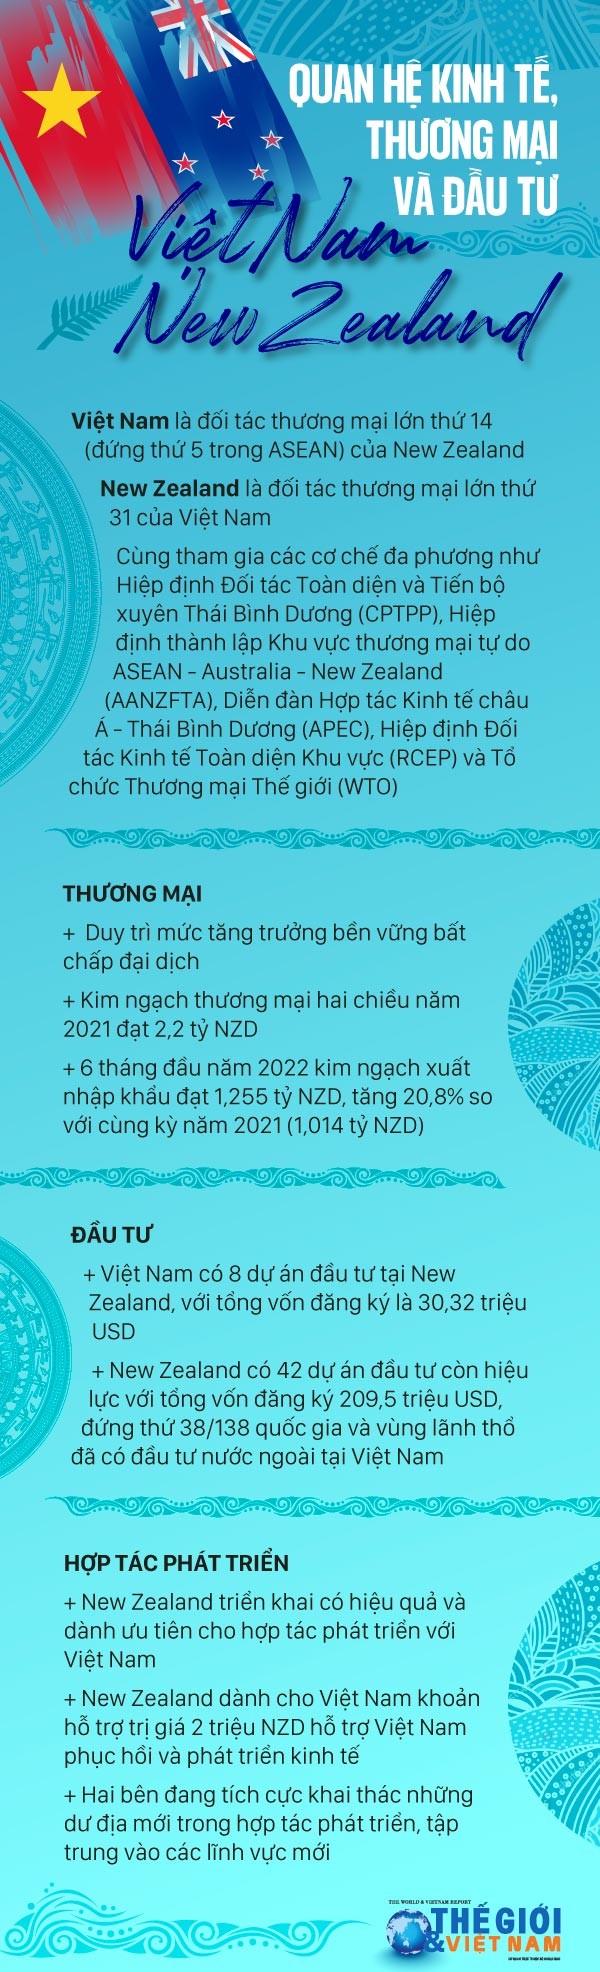 Việt Nam mong muốn tăng cường, làm sâu sắc Đối tác chiến lược Việt Nam-New Zealand